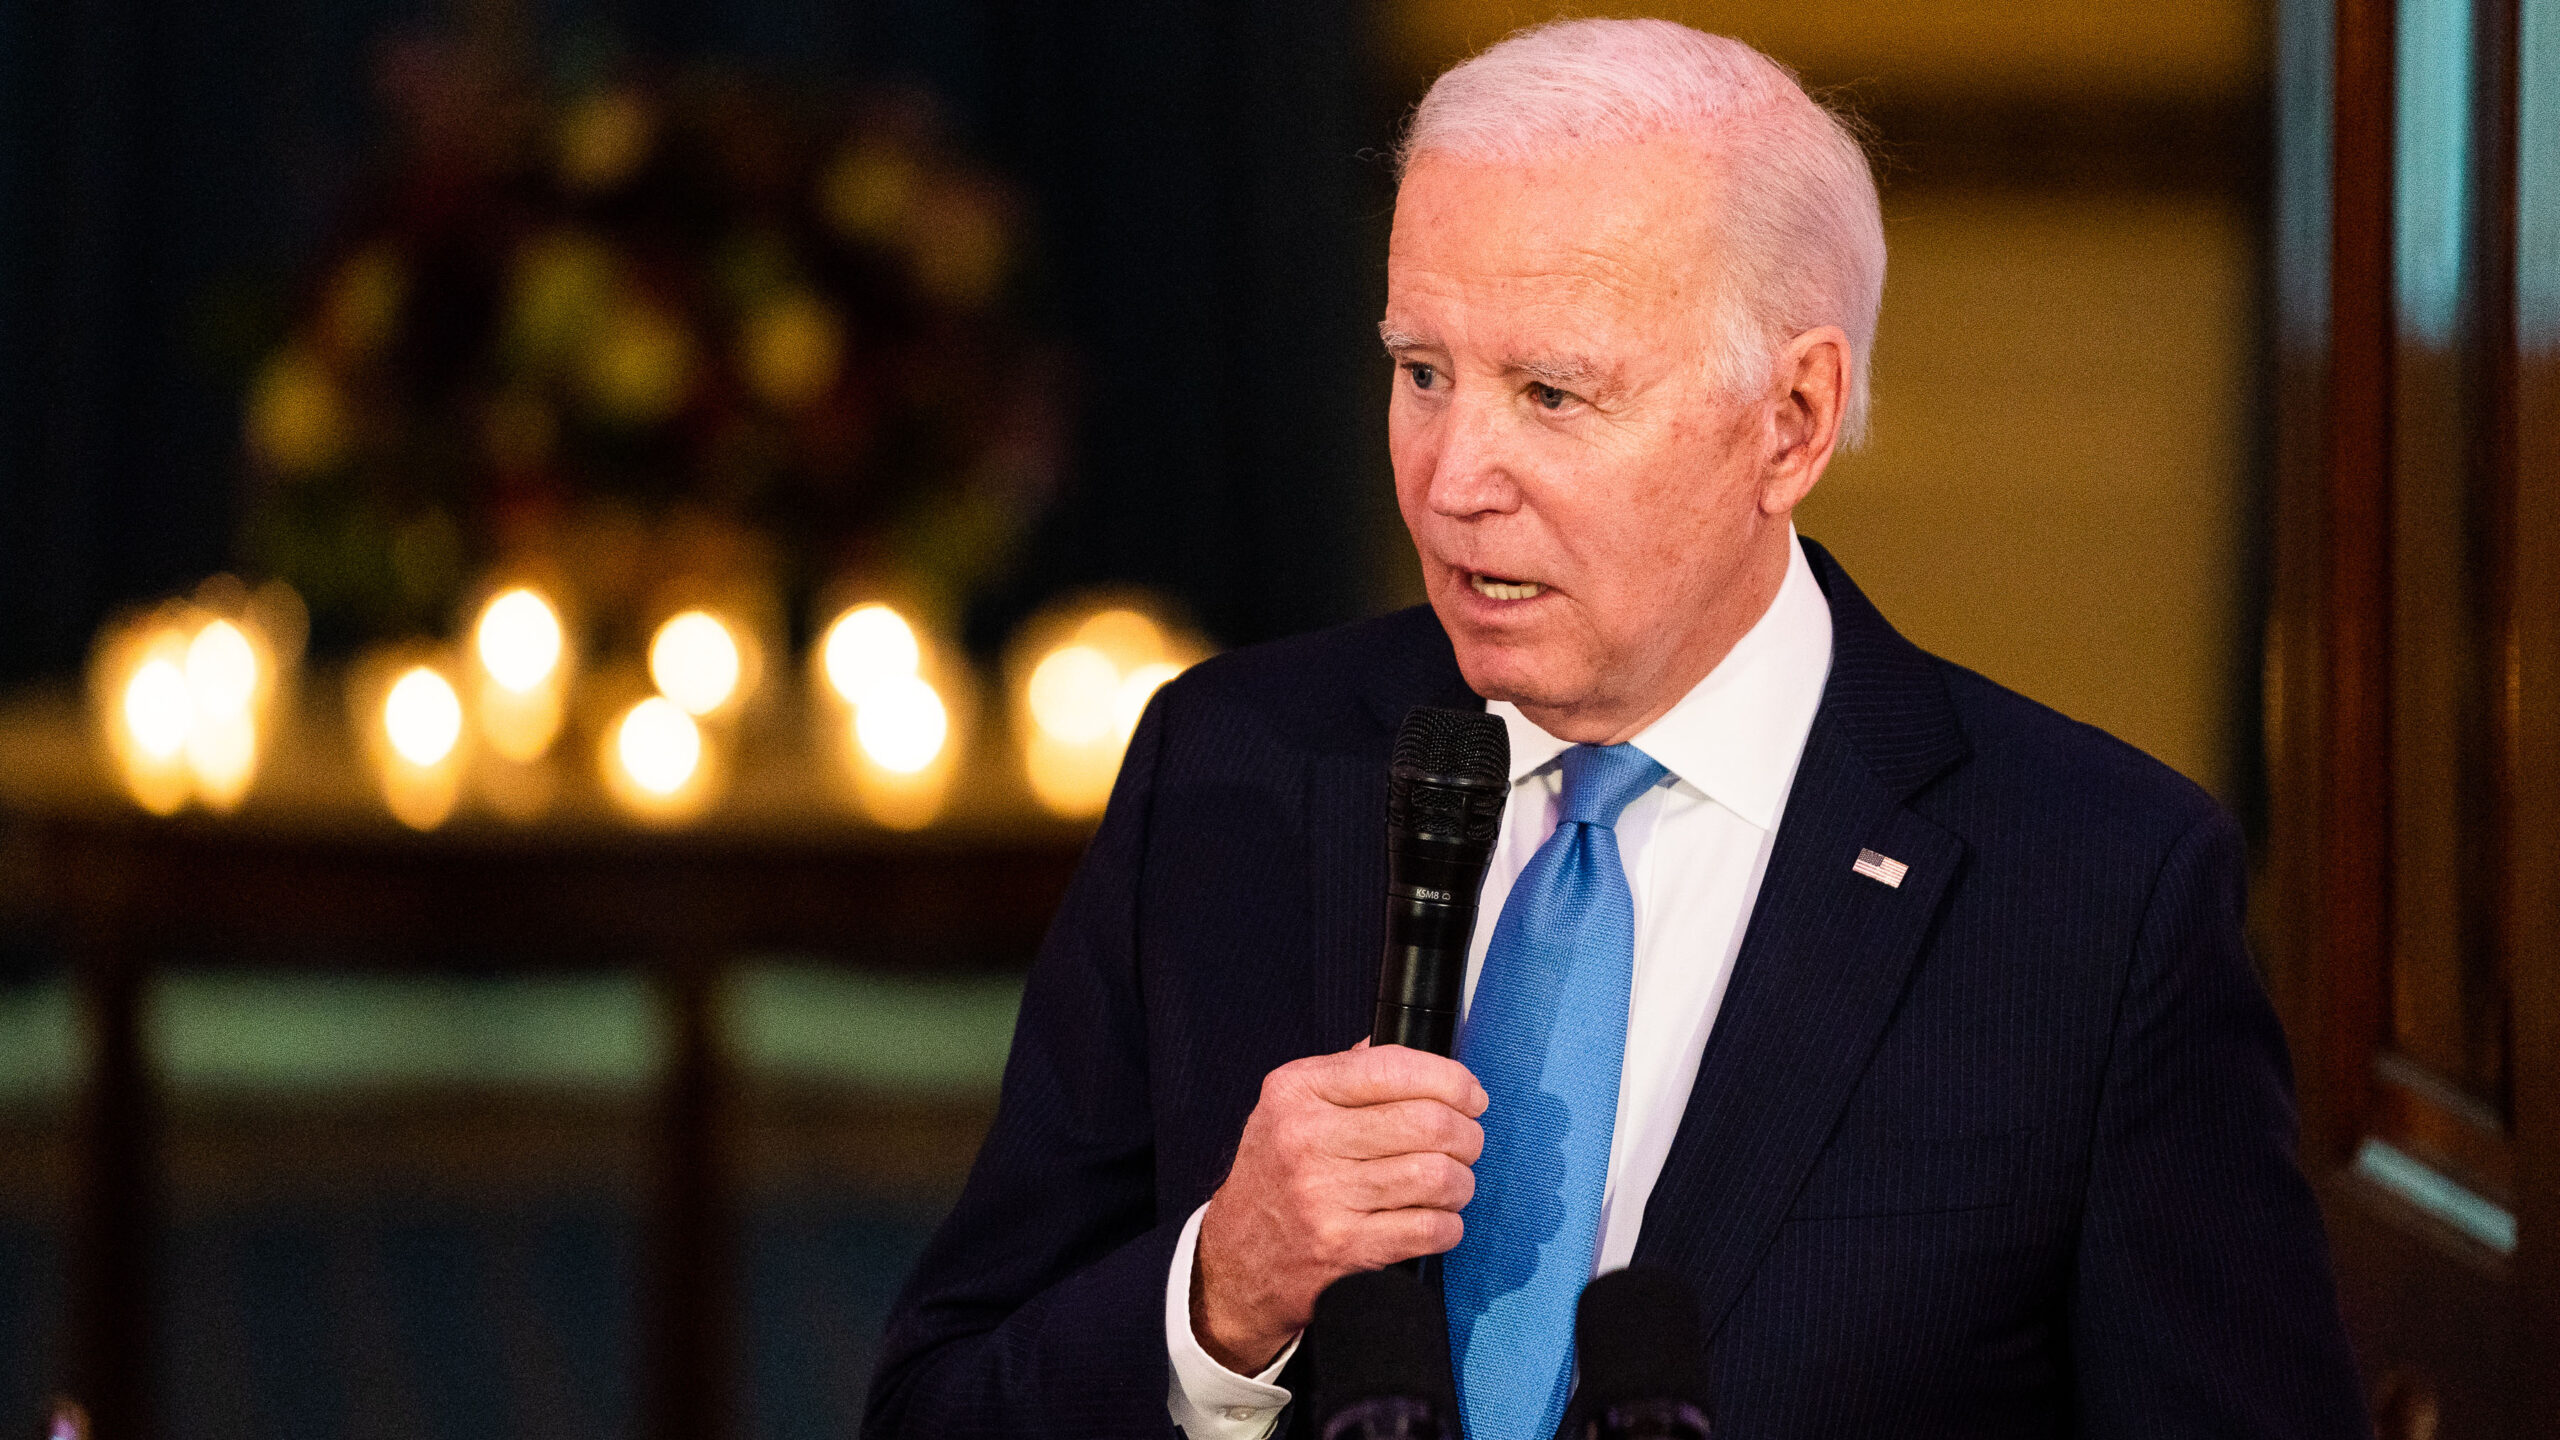 Biden’s rape accuser cautions: ‘If anything happens to me, blame Joe Biden.’